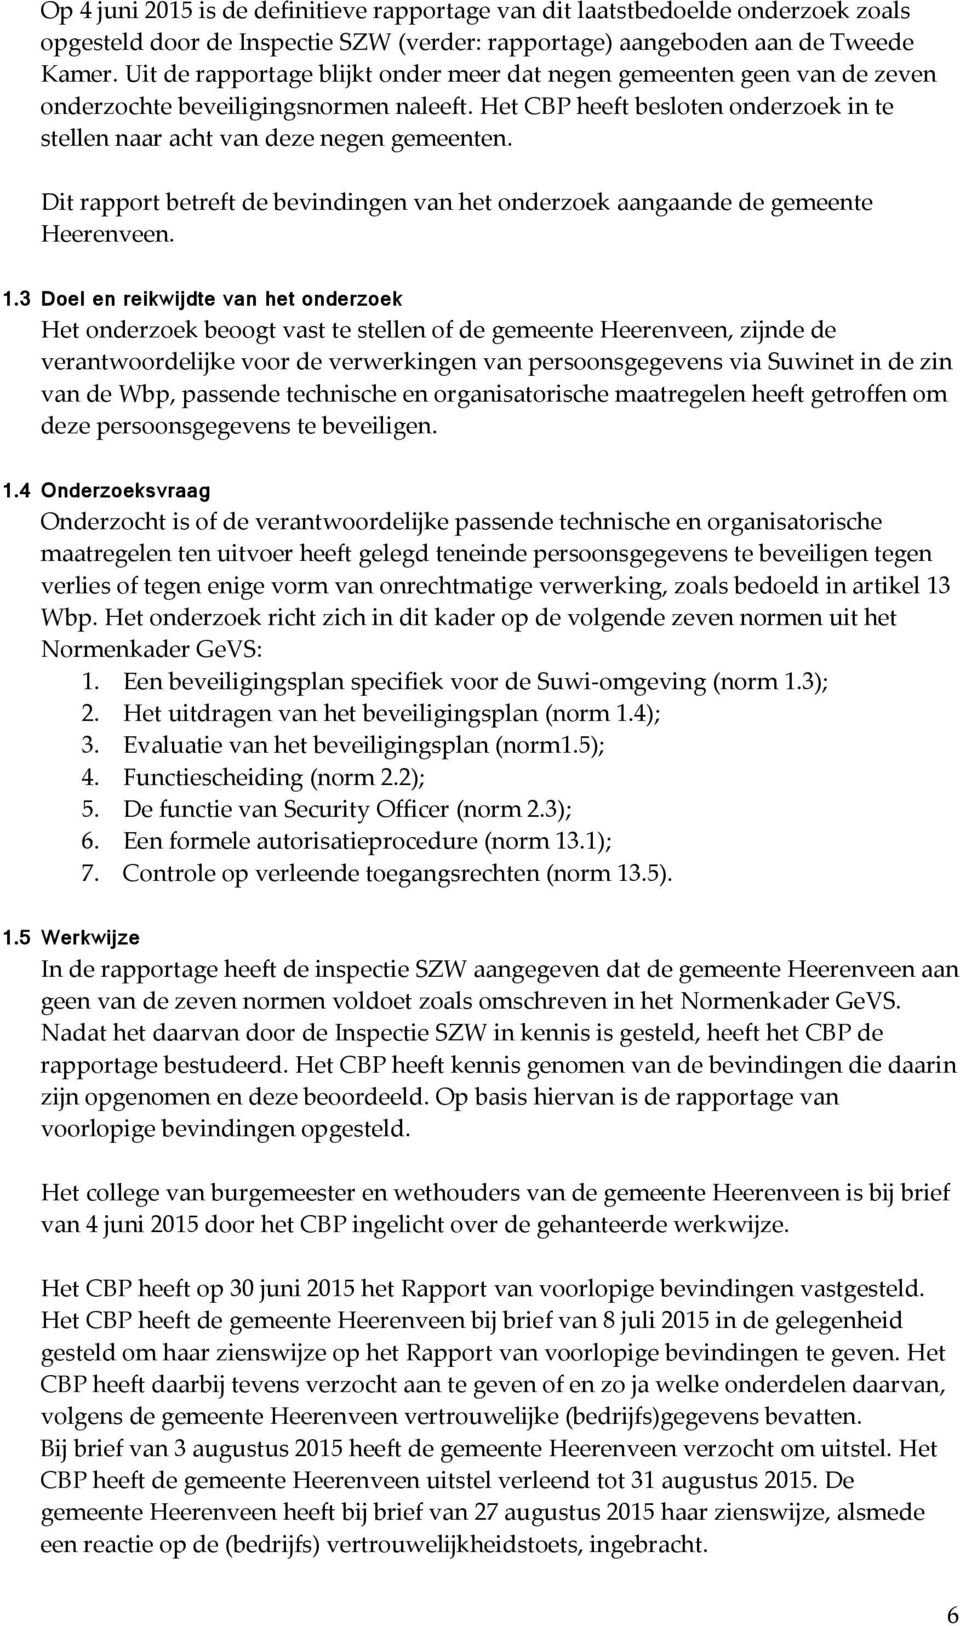 Dit rapport betreft de bevindingen van het onderzoek aangaande de gemeente Heerenveen. 1.